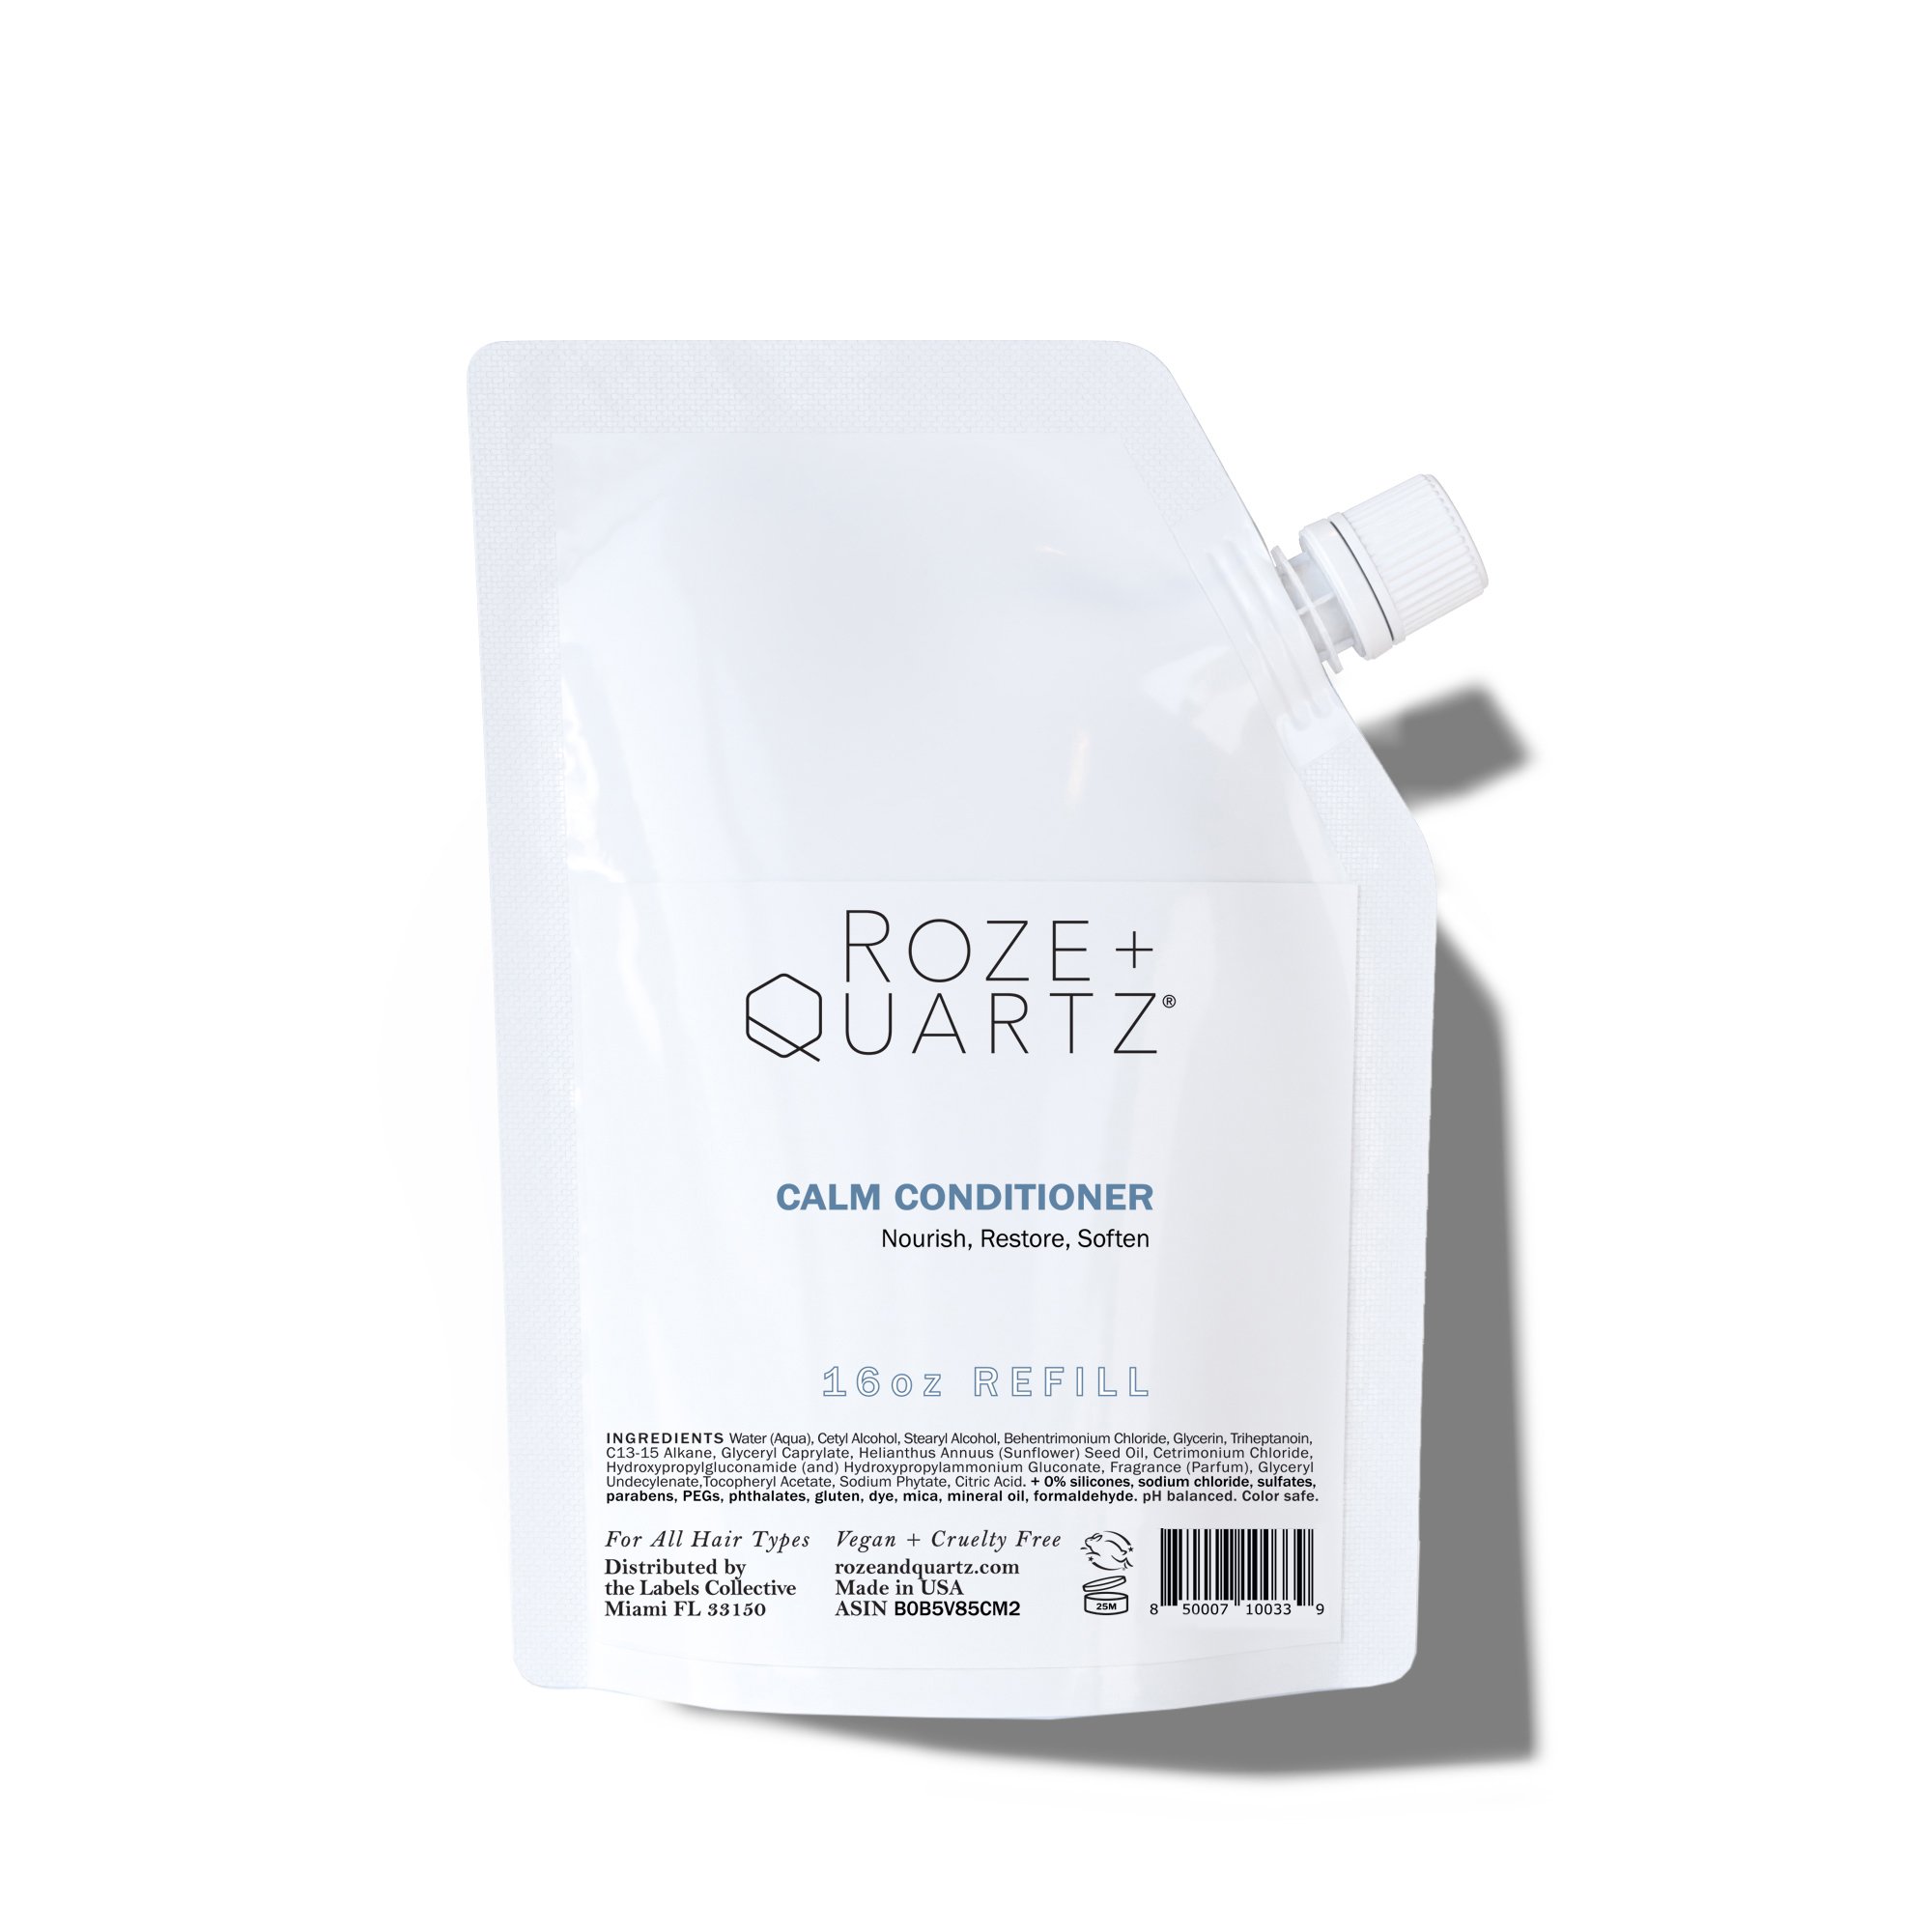 Roze + Quartz Calm Conditioner REFILL 16oz_SHADOW.jpg